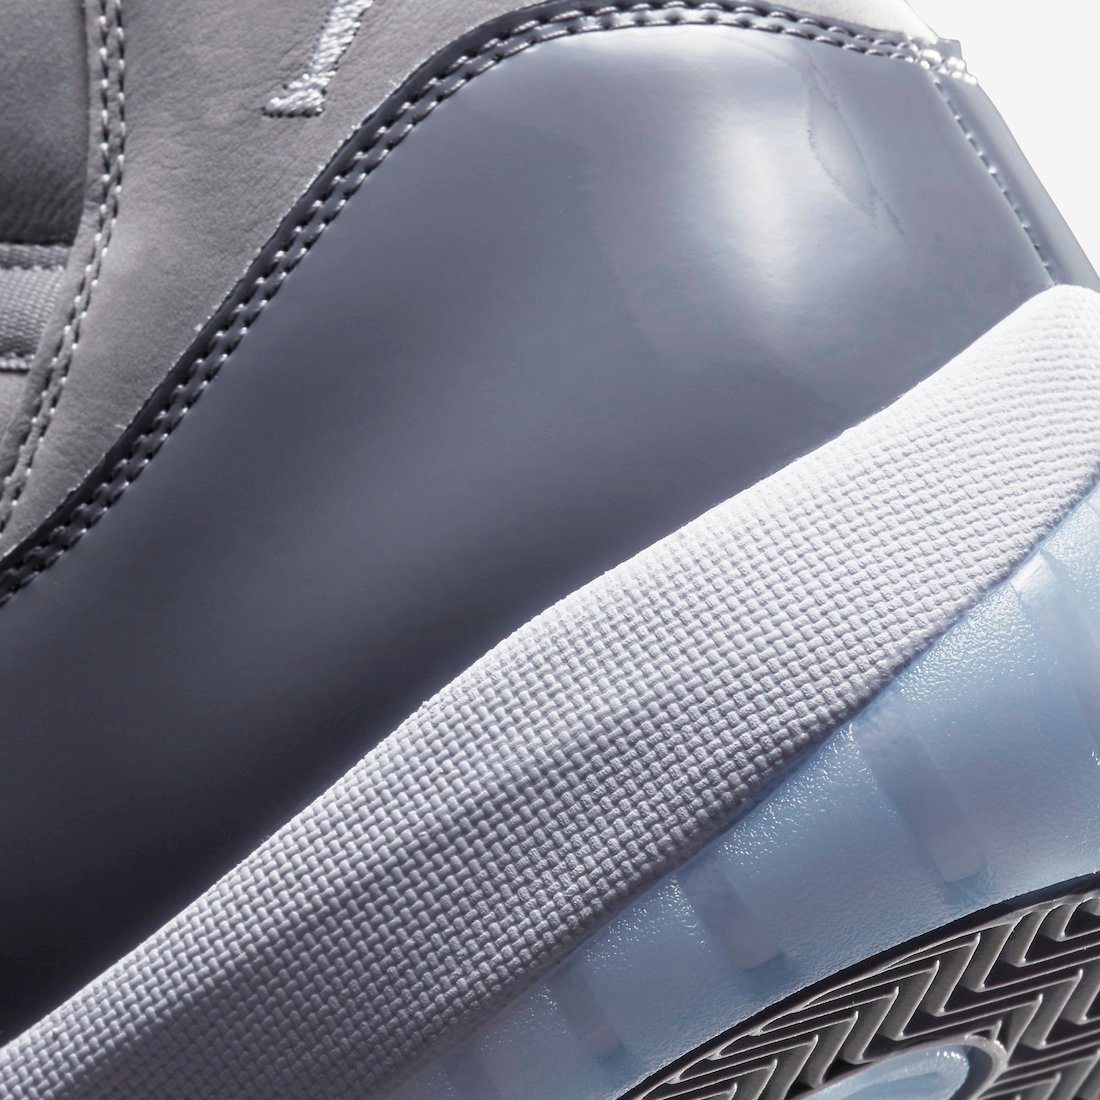 Air Jordan 11 Cool Grey 2021 CT8012-005 Release Info